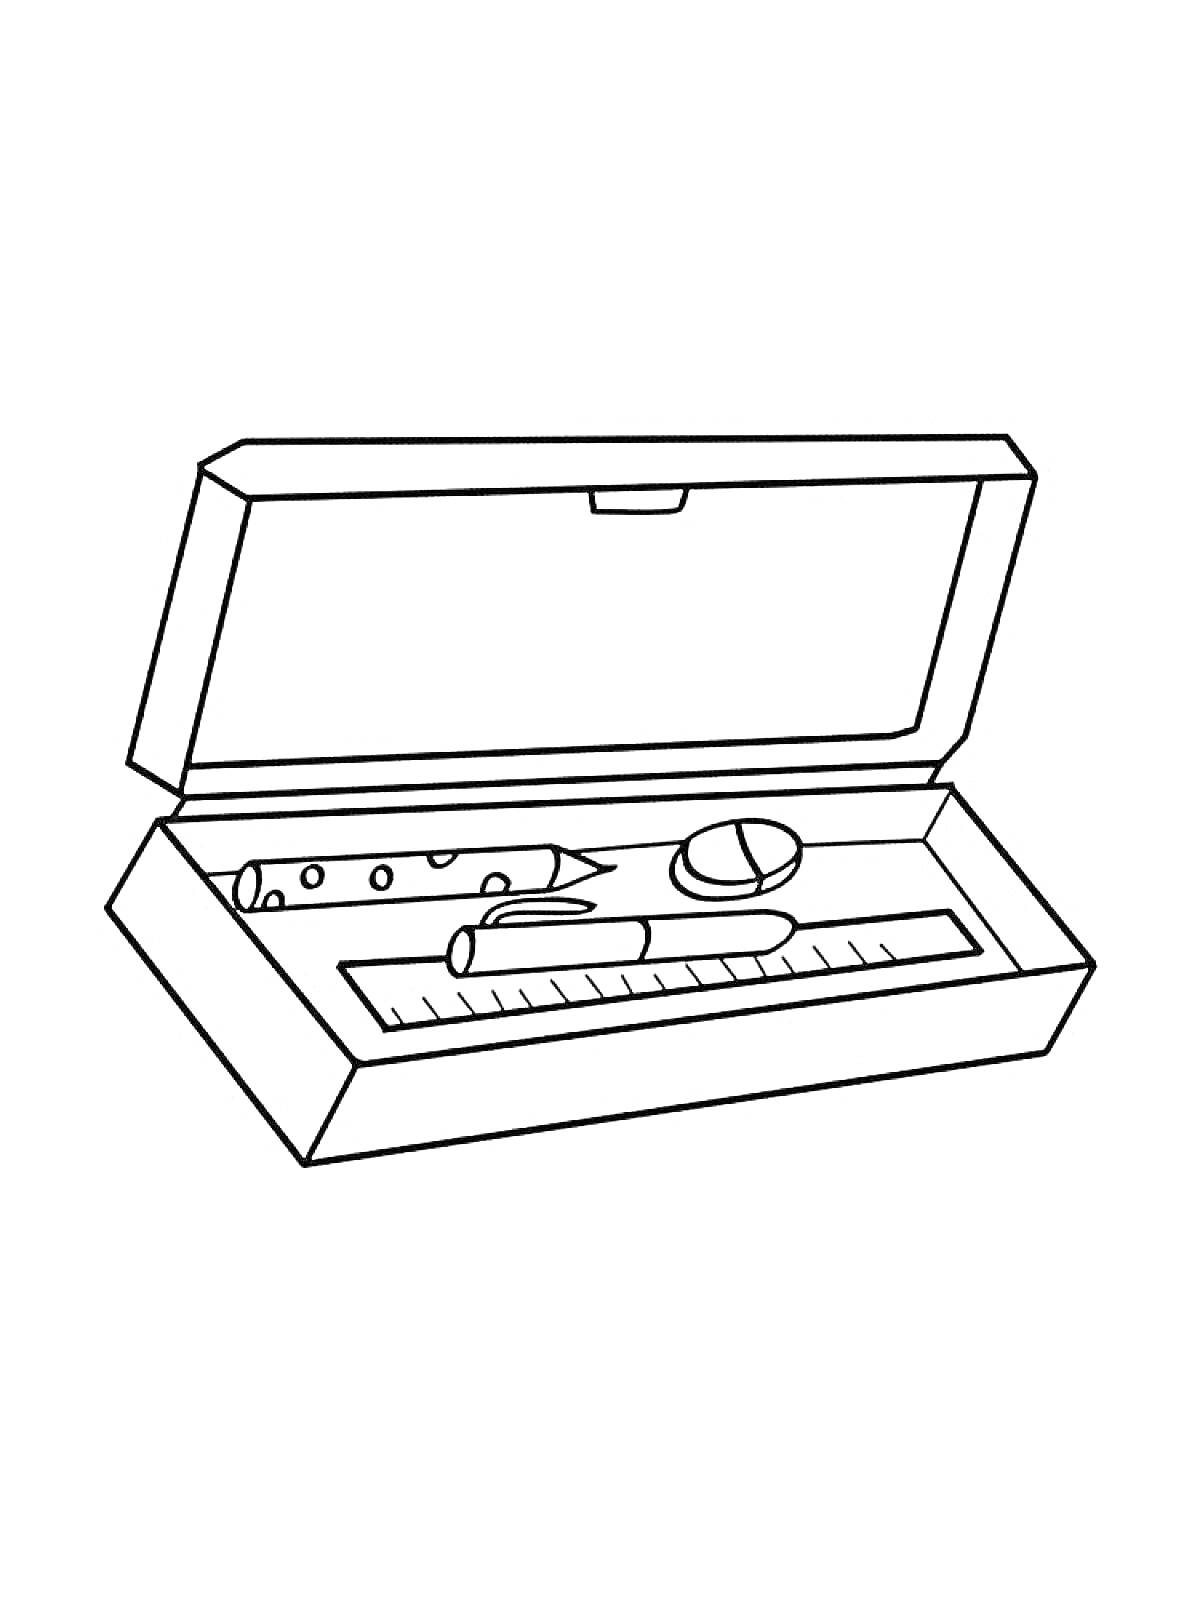 Раскраска Пенал с открытой крышкой и элементами: фломастер, линейка, карандаш, ластик